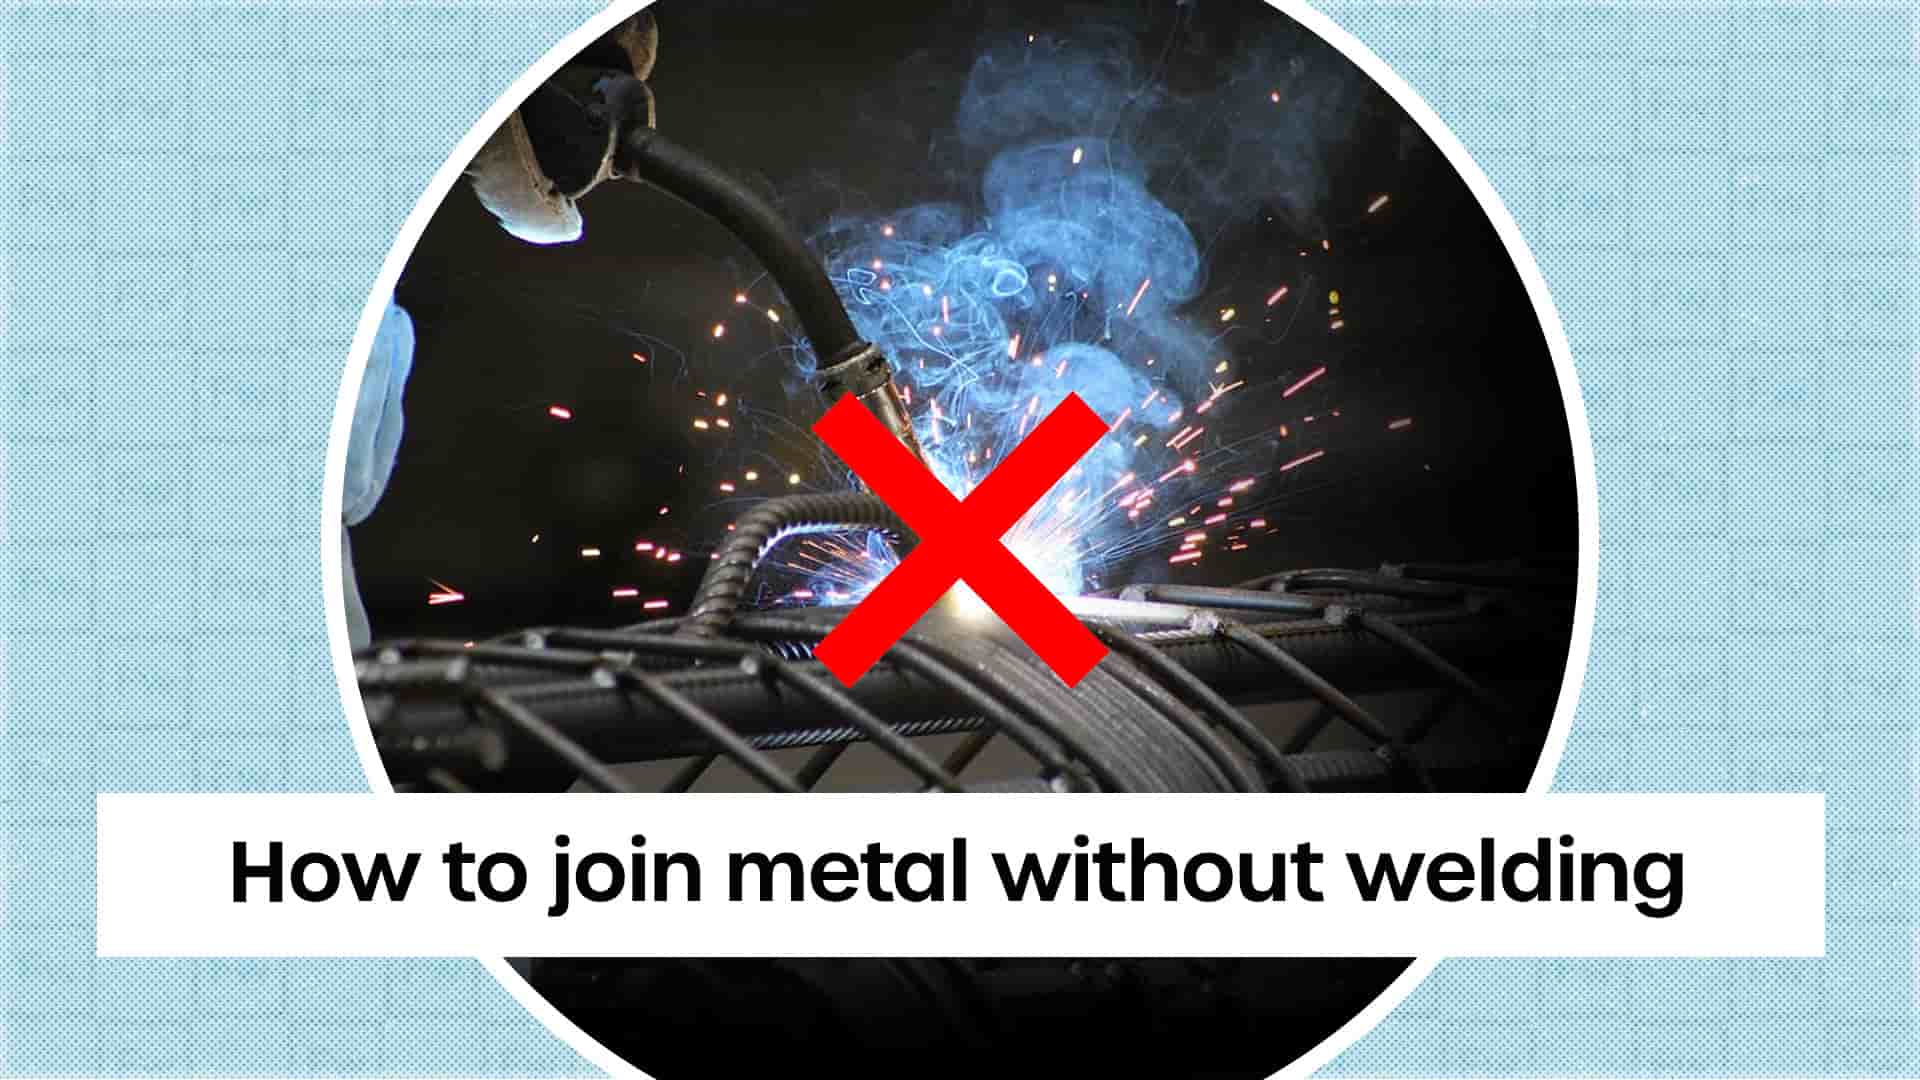 Metal Glue - Adhesive for Repairing Welded Metals, Weld Metal